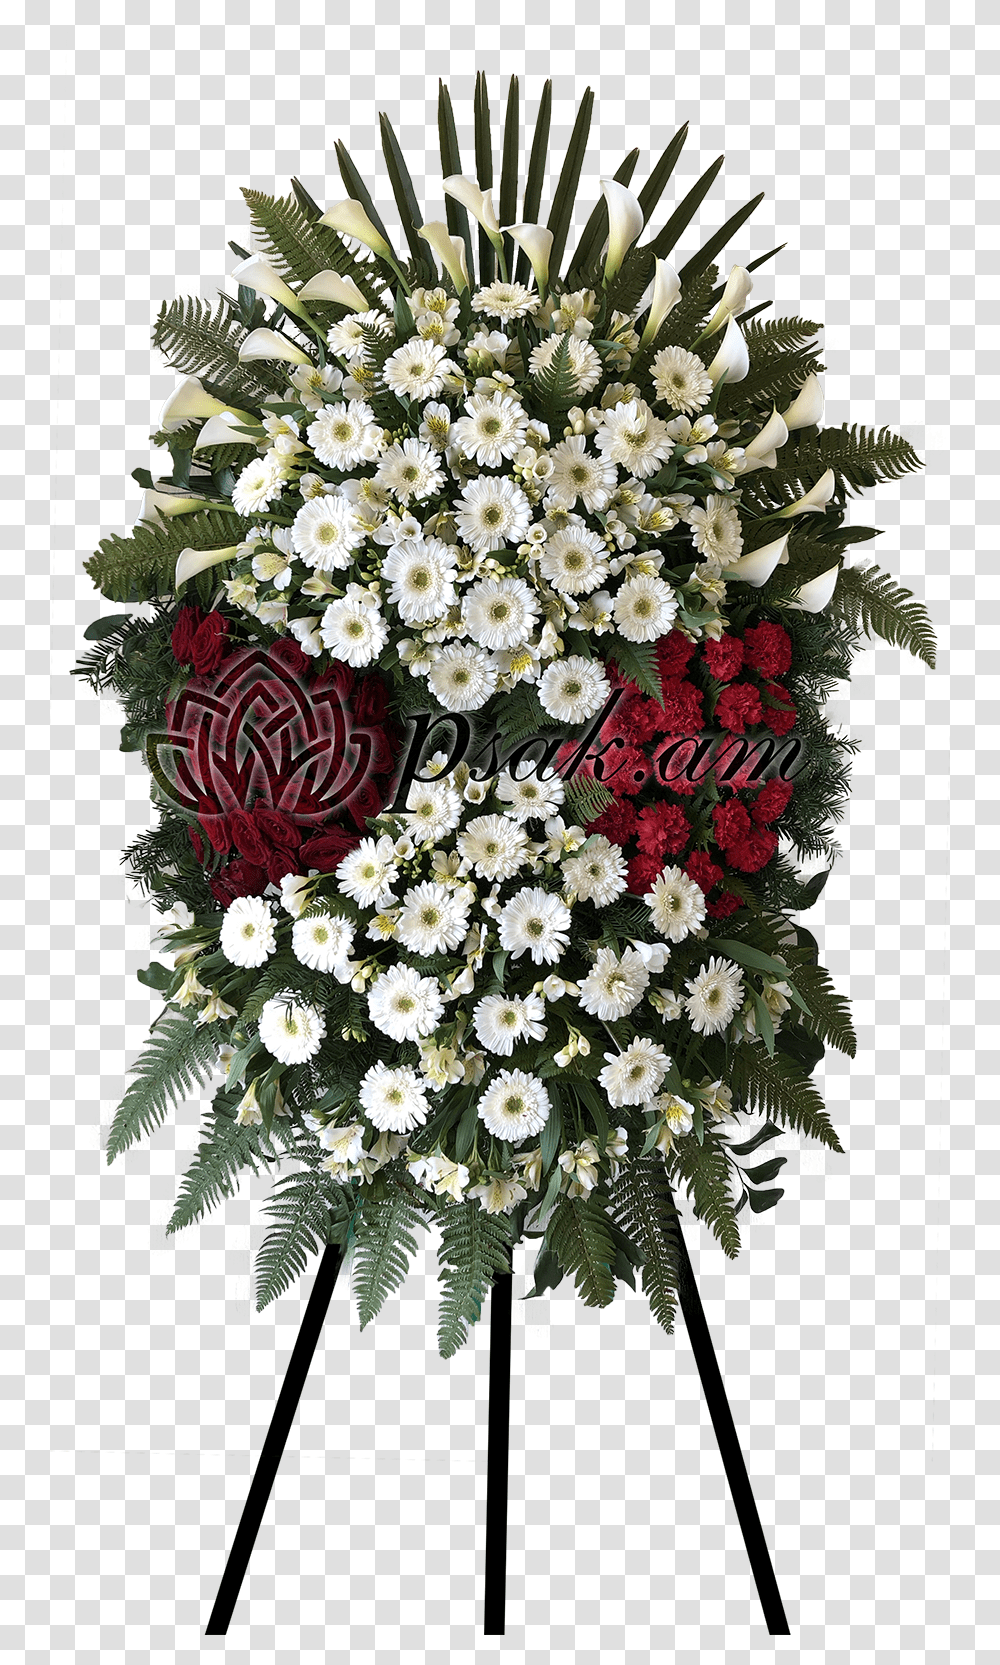 Funeral Wreath With Calla Lilies Caxkepsak, Plant, Flower Bouquet, Flower Arrangement, Blossom Transparent Png